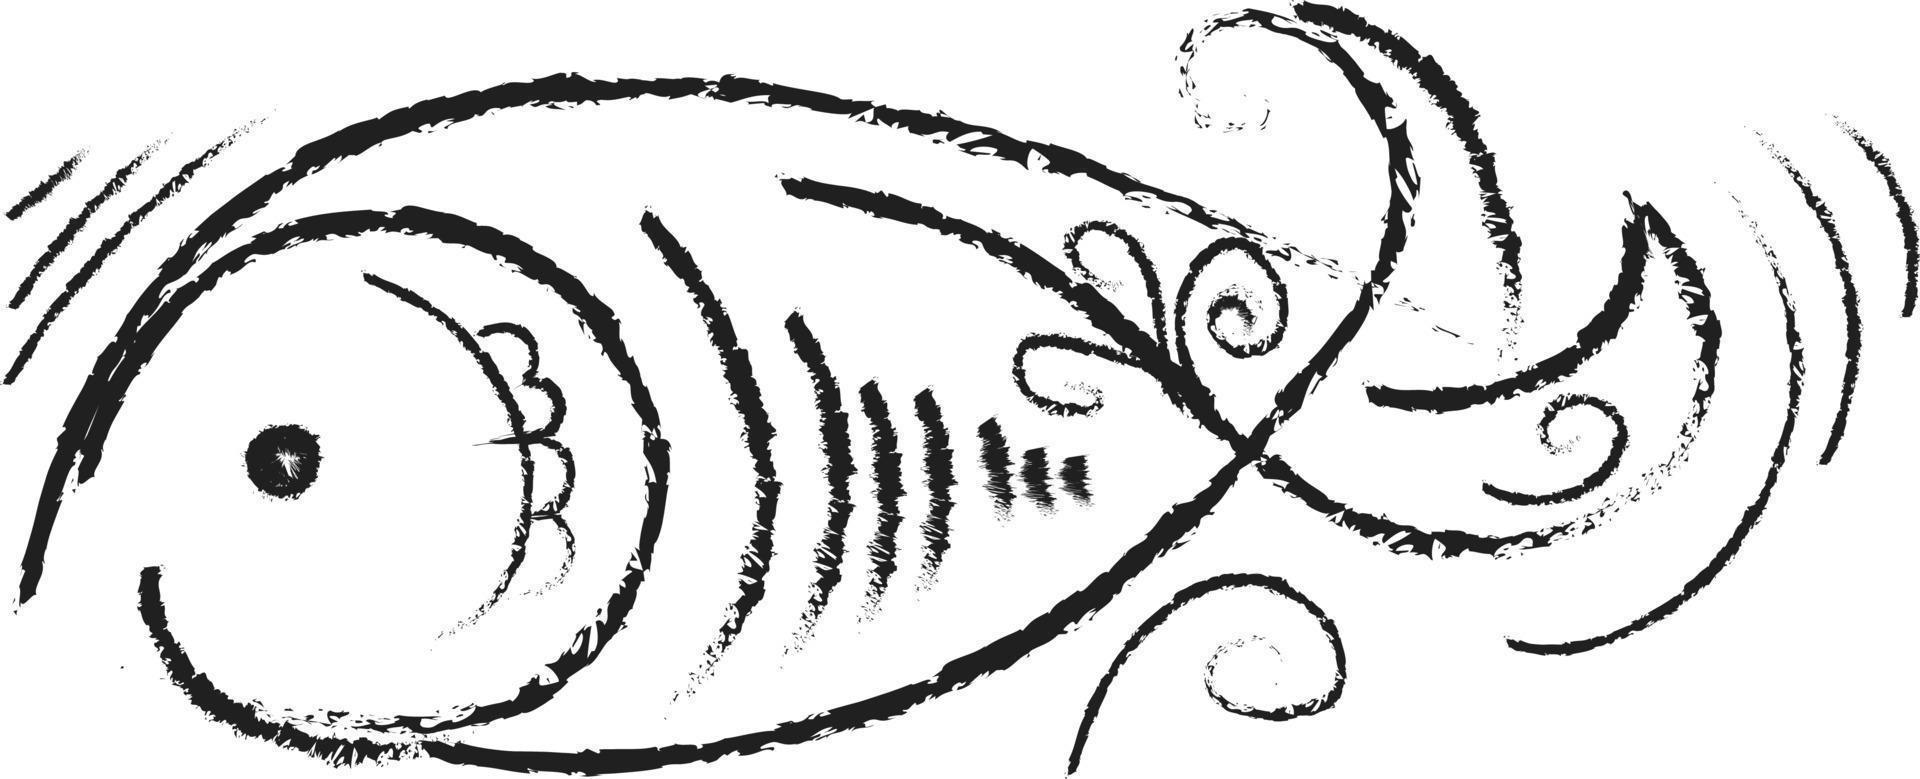 dessin de poisson décoratif, illustration, vecteur sur fond blanc.